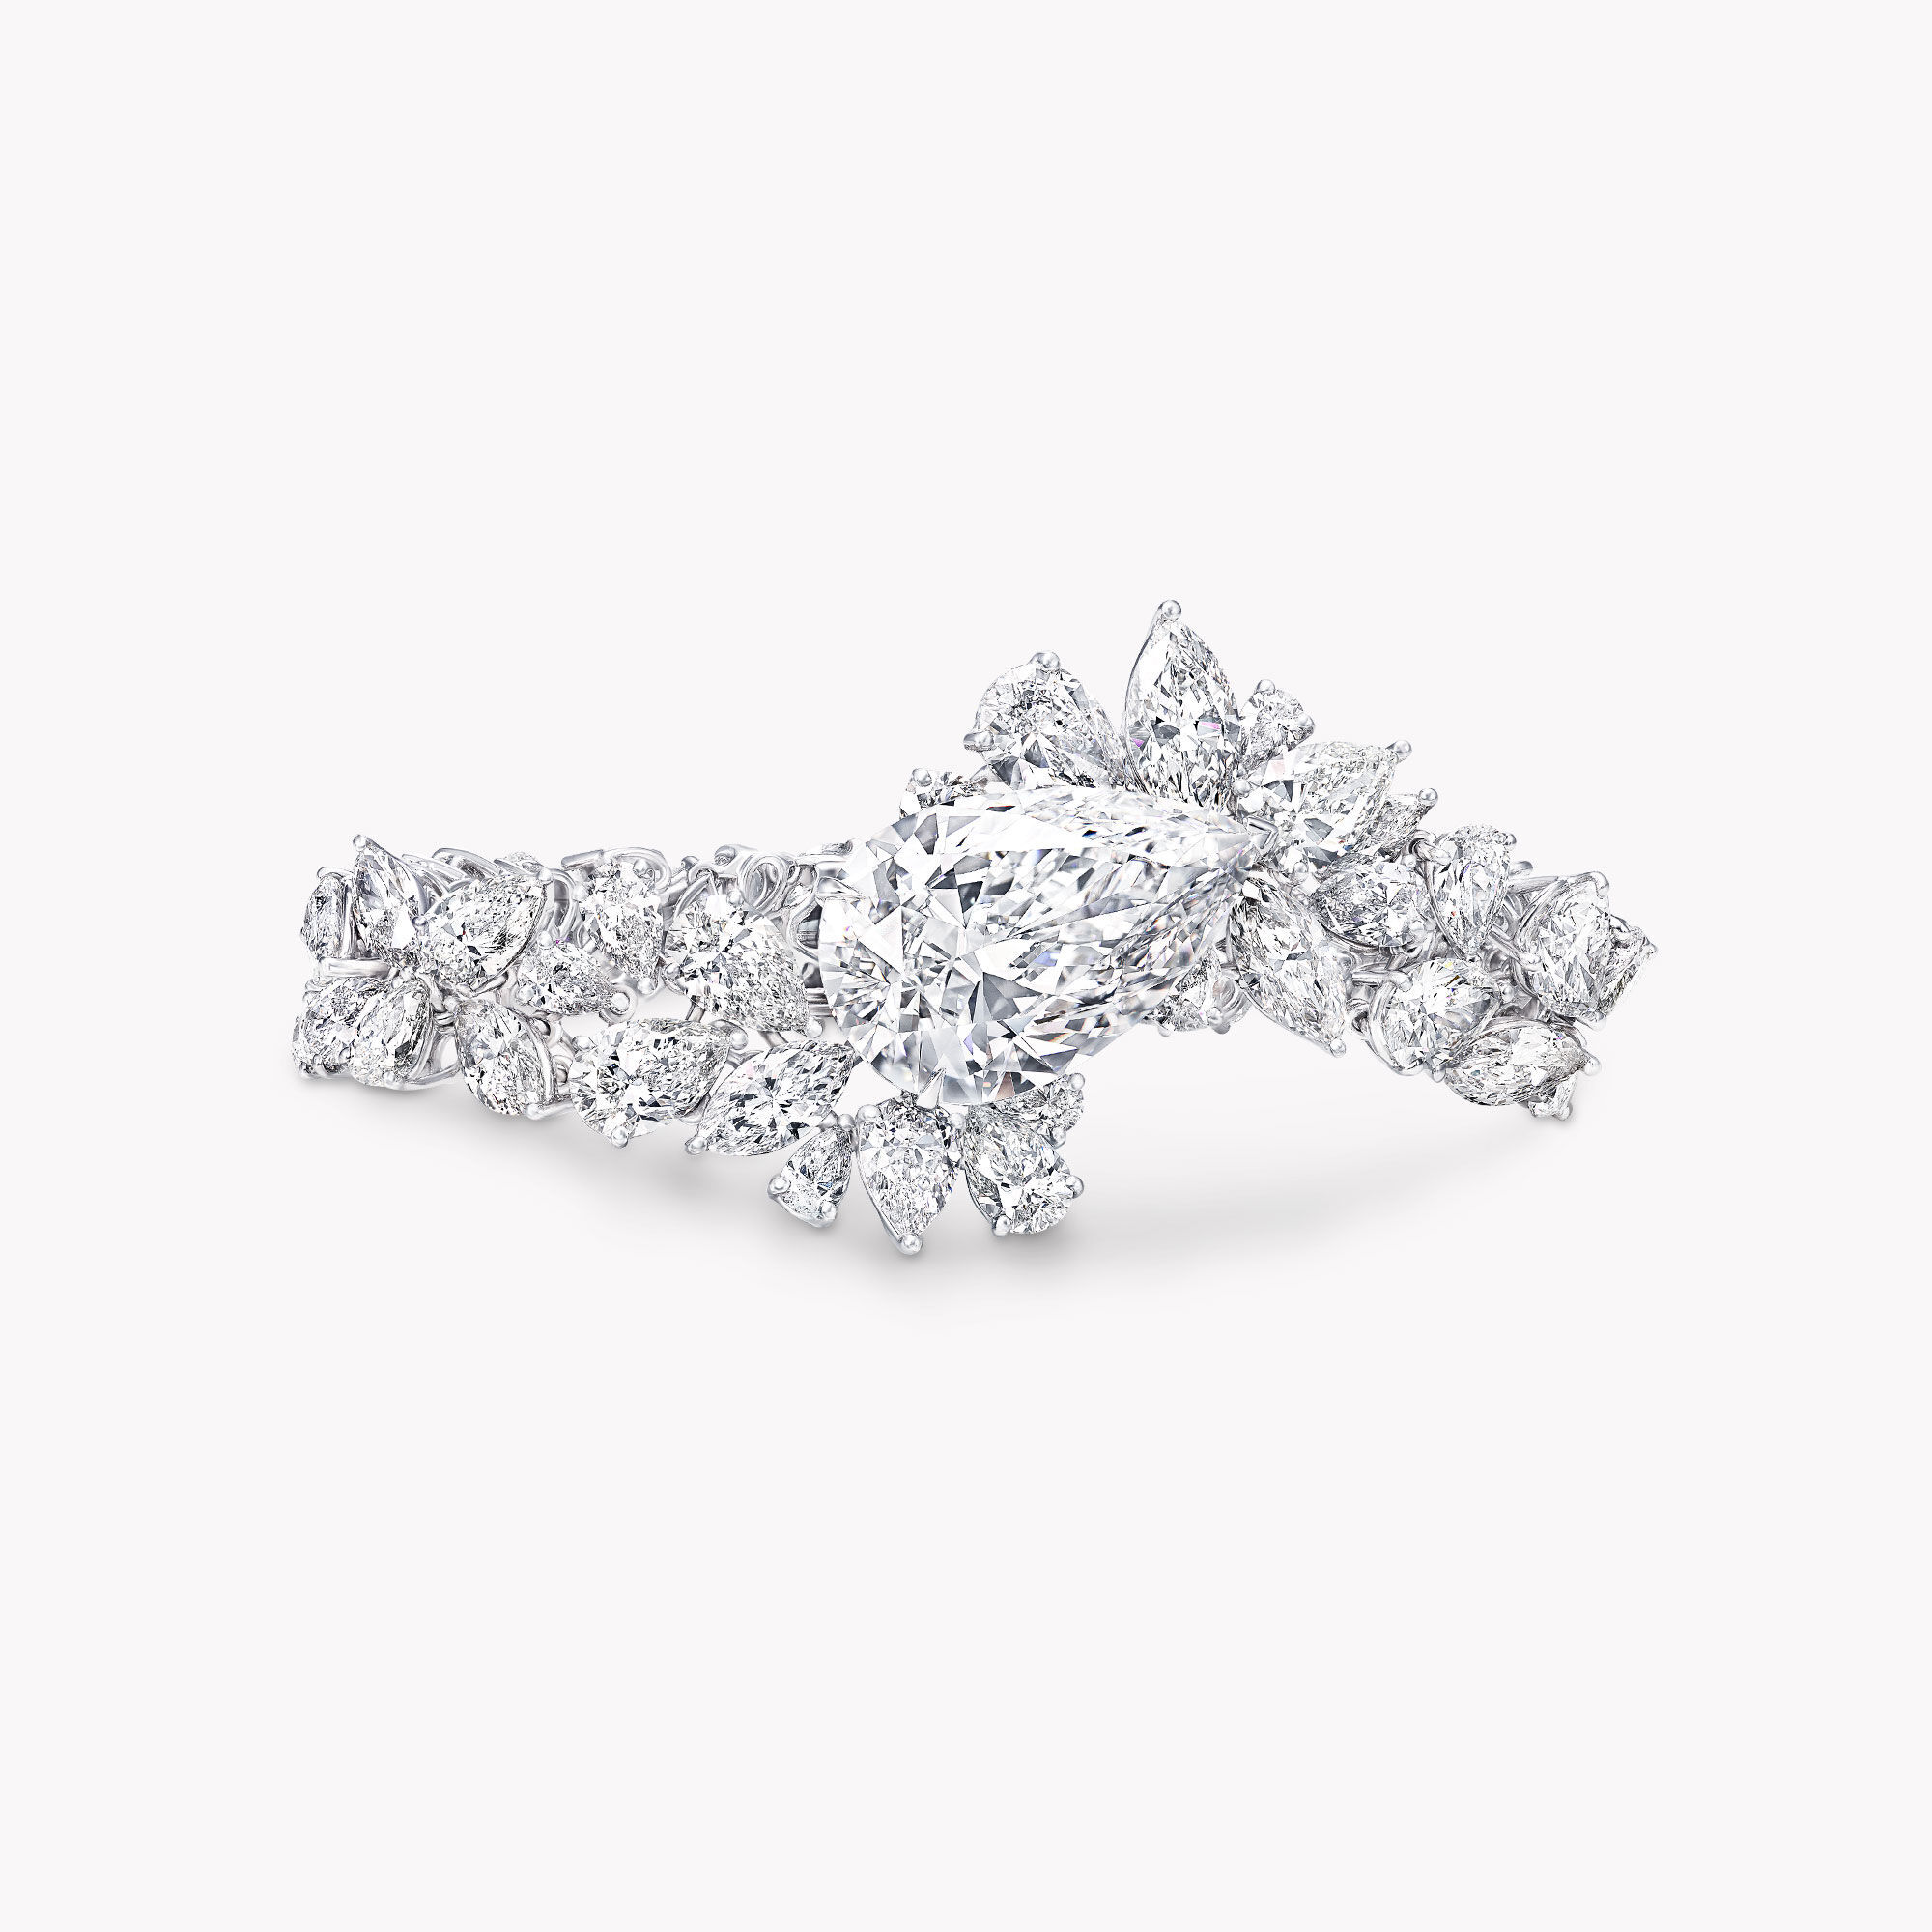 White diamond bracelet